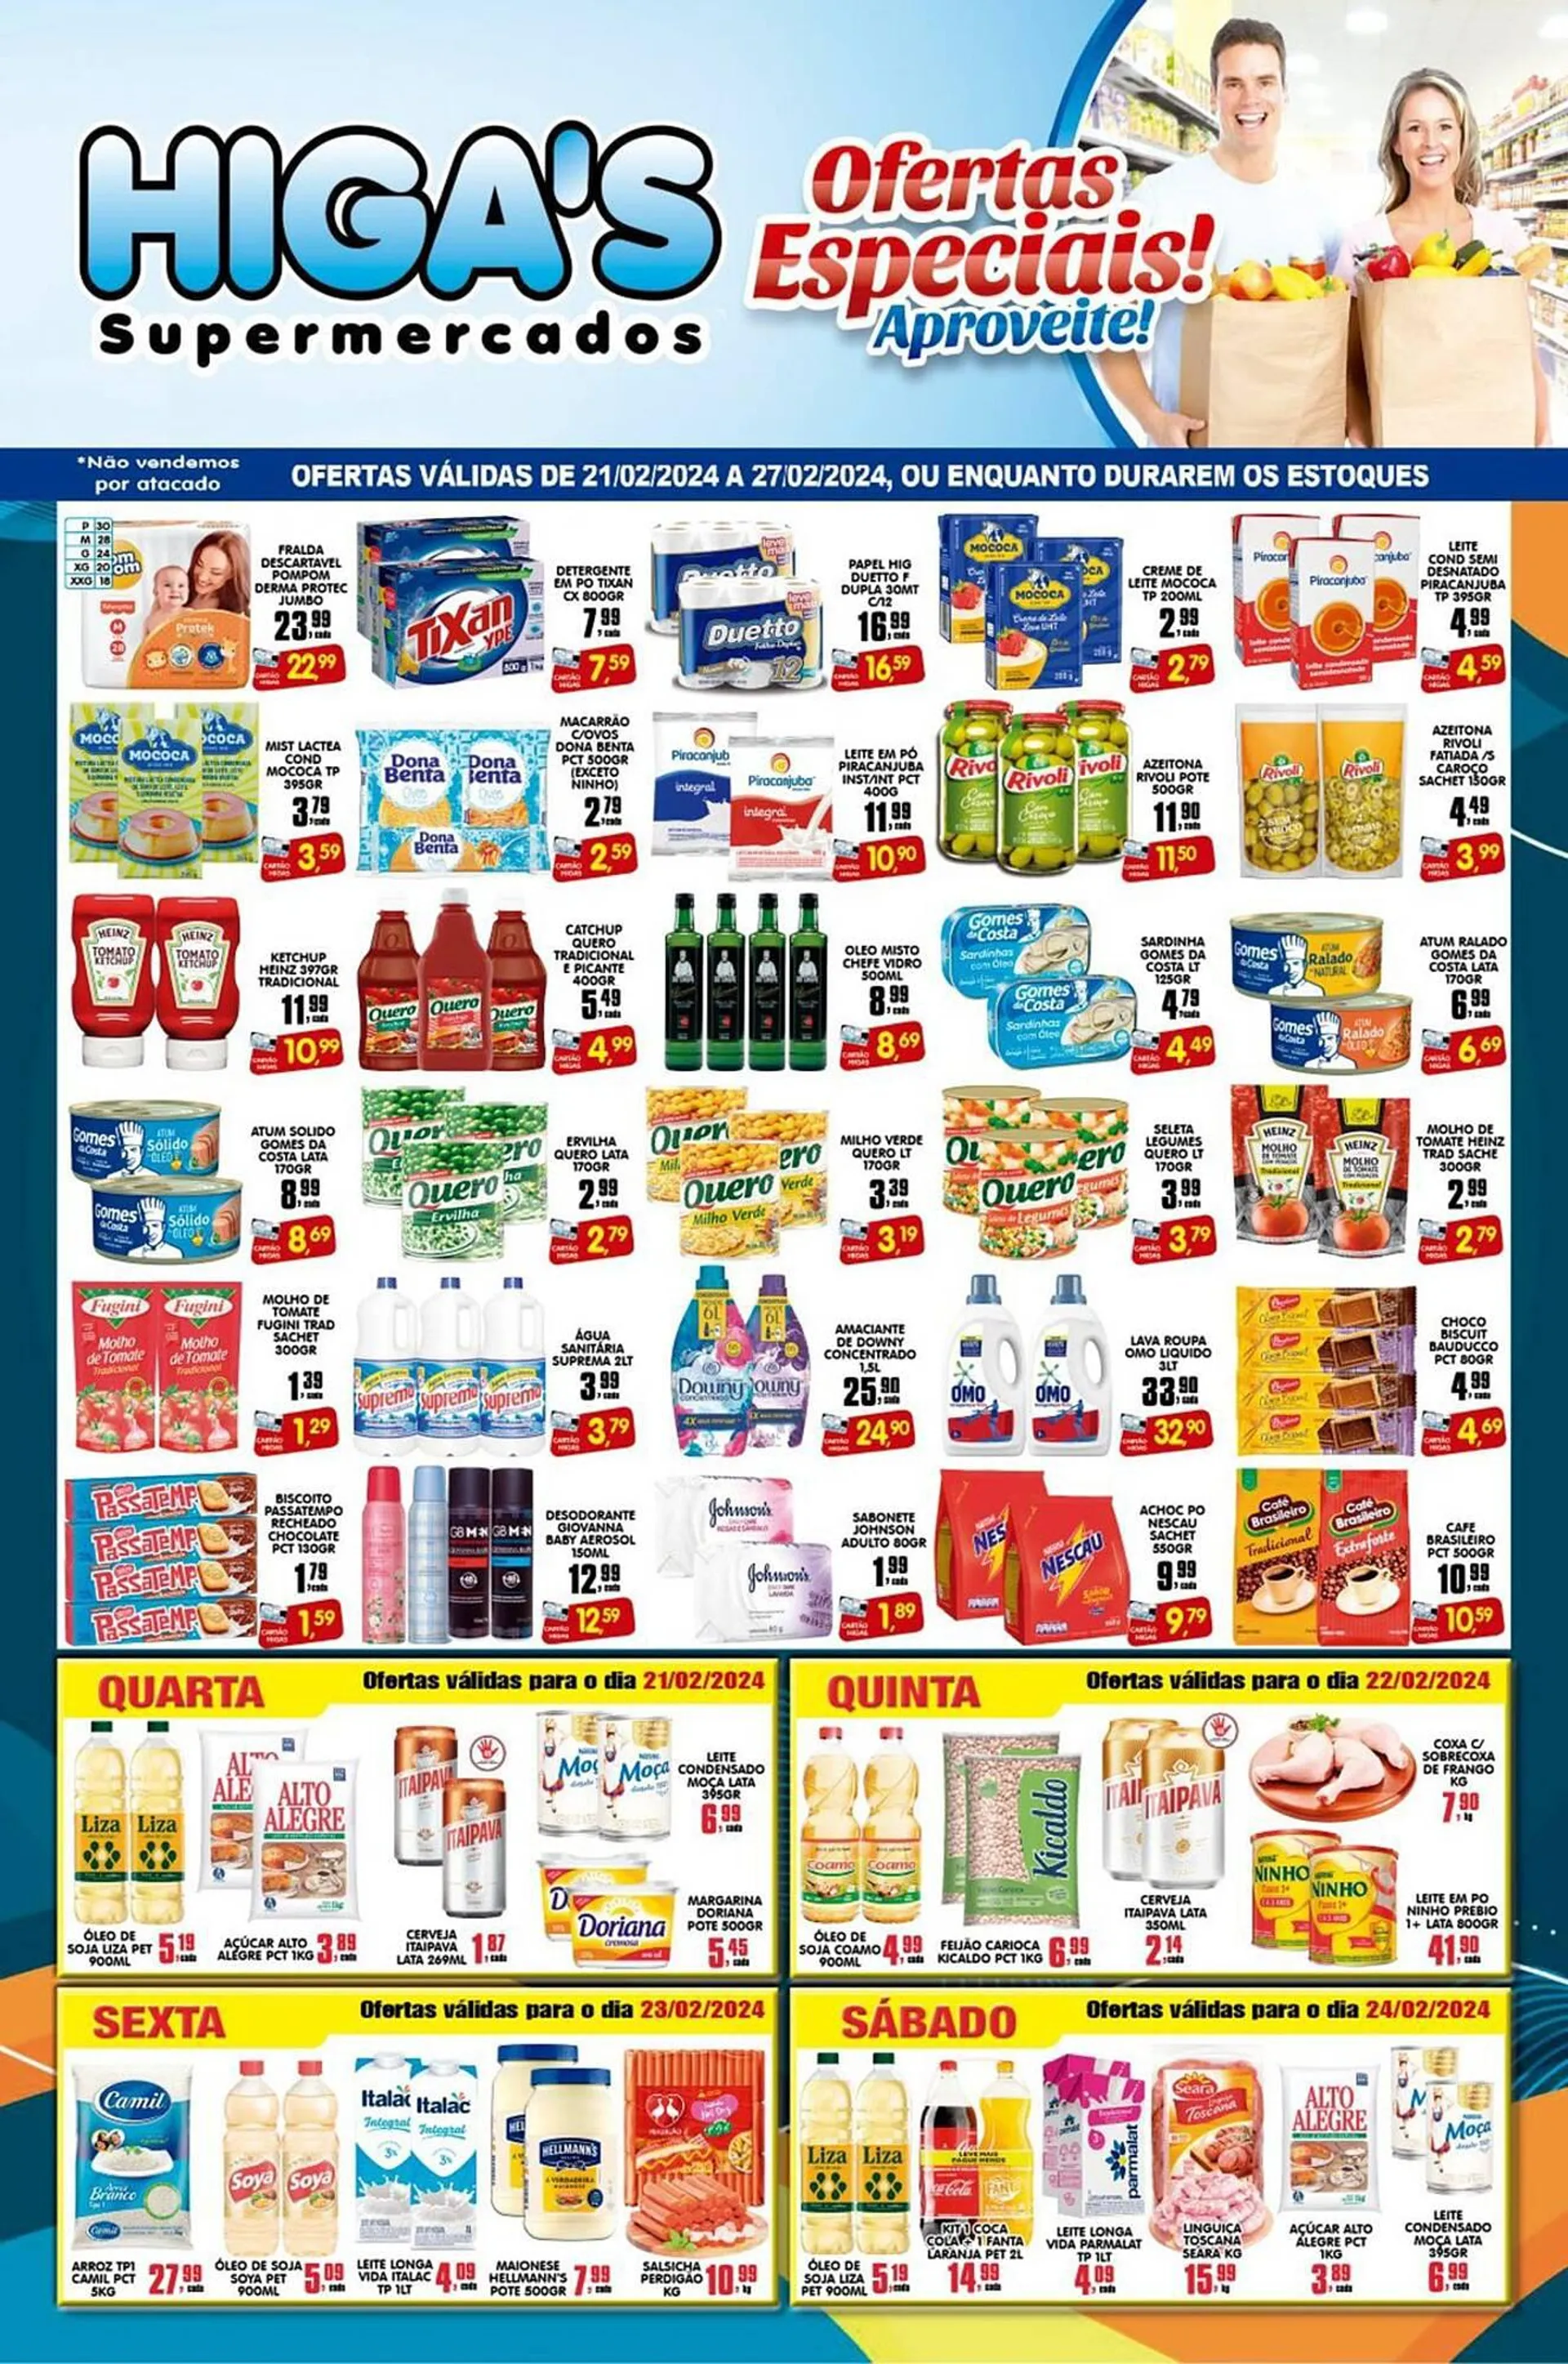 Encarte de Catálogo Higa's Supermercado 21 de fevereiro até 27 de fevereiro 2024 - Pagina 